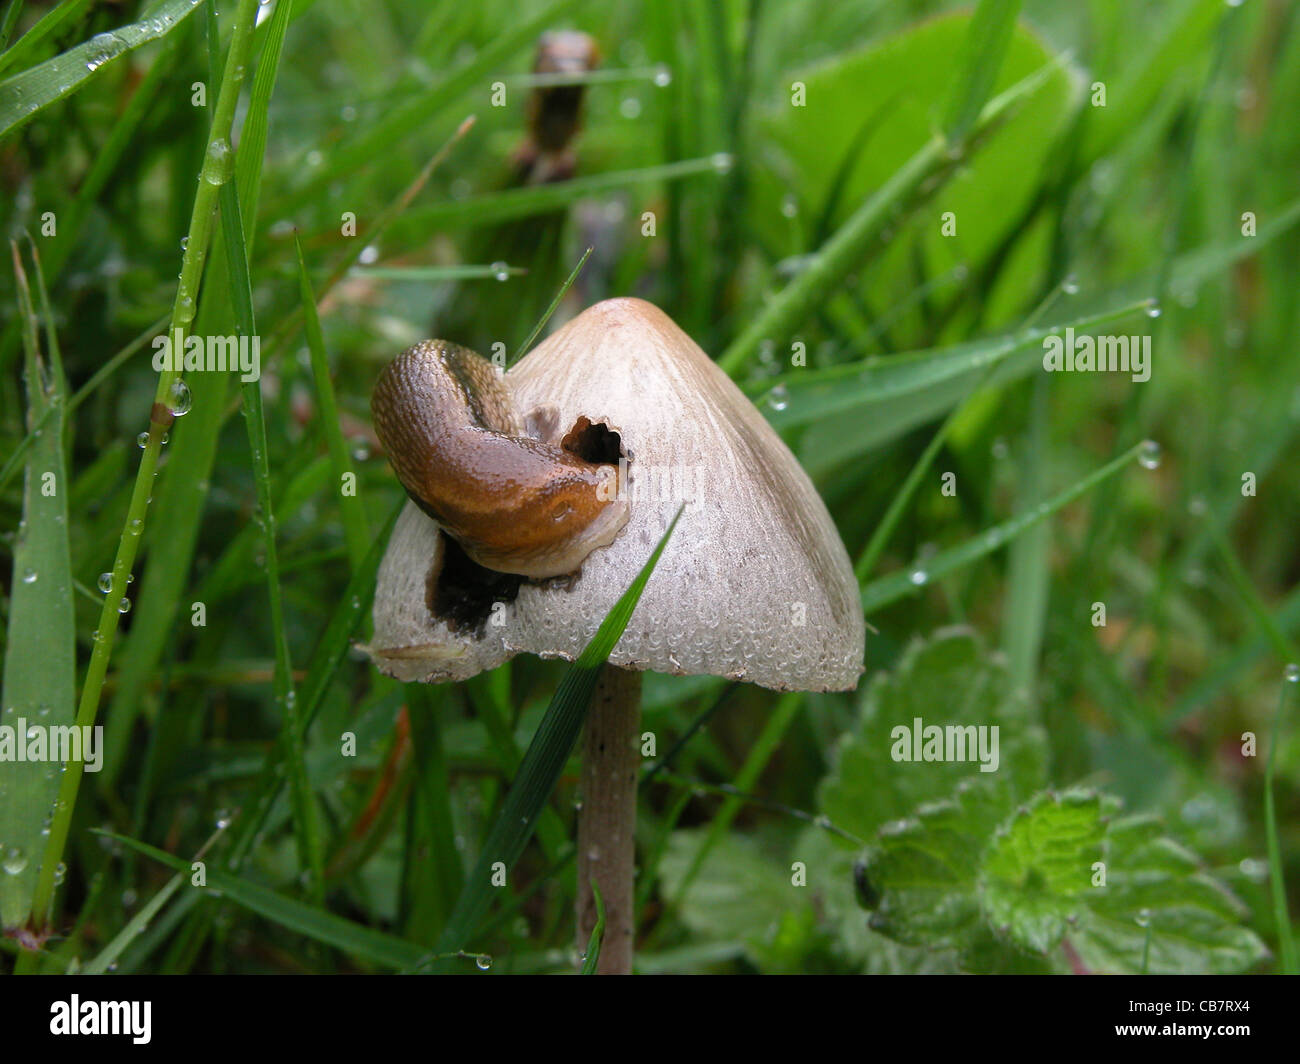 slug on fungus Stock Photo